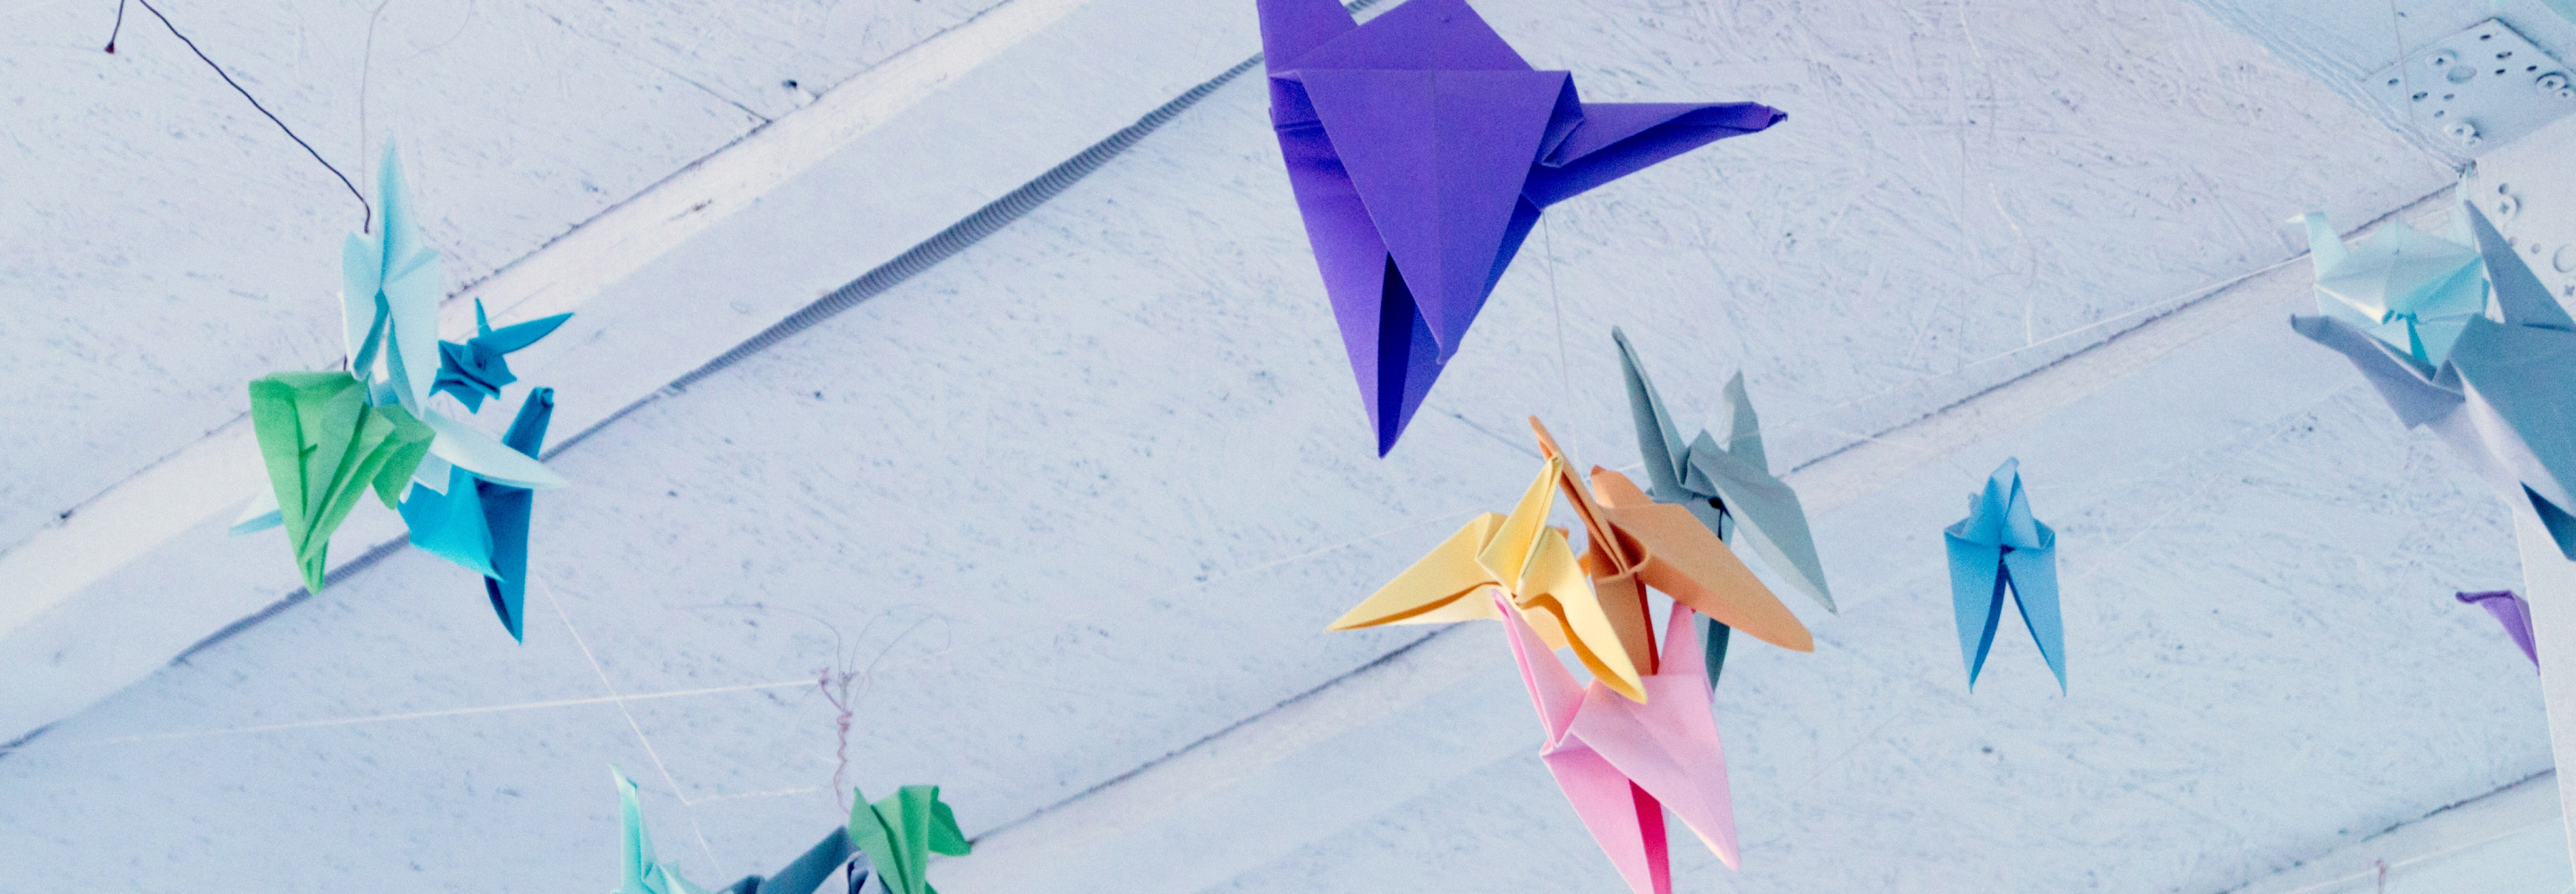 Hanging origami cranes